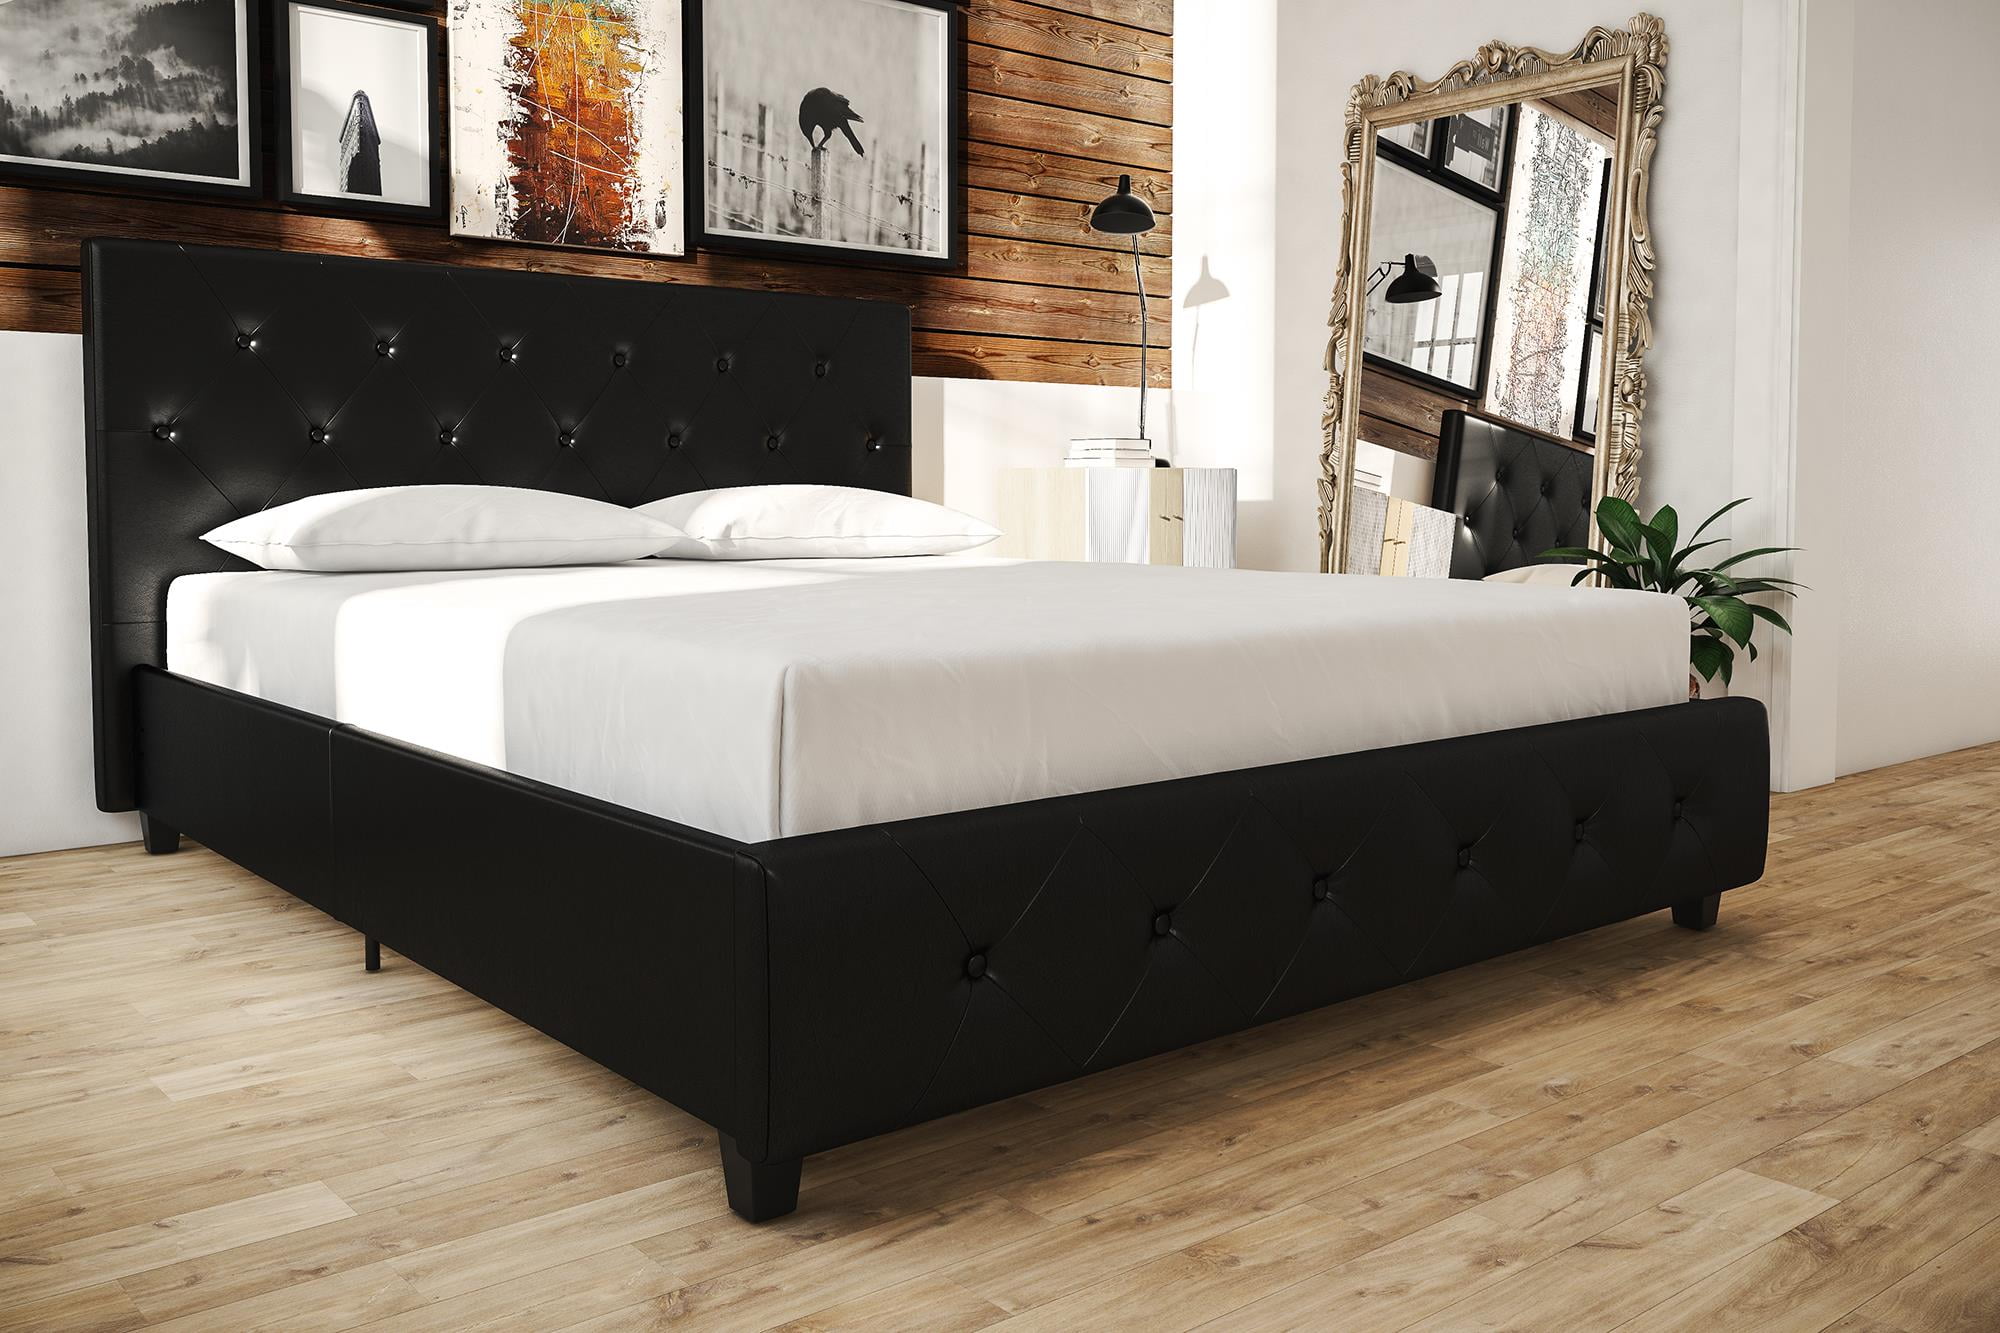 Dhp Dakota Upholstered Platform Bed Full Size Frame Black Walmart